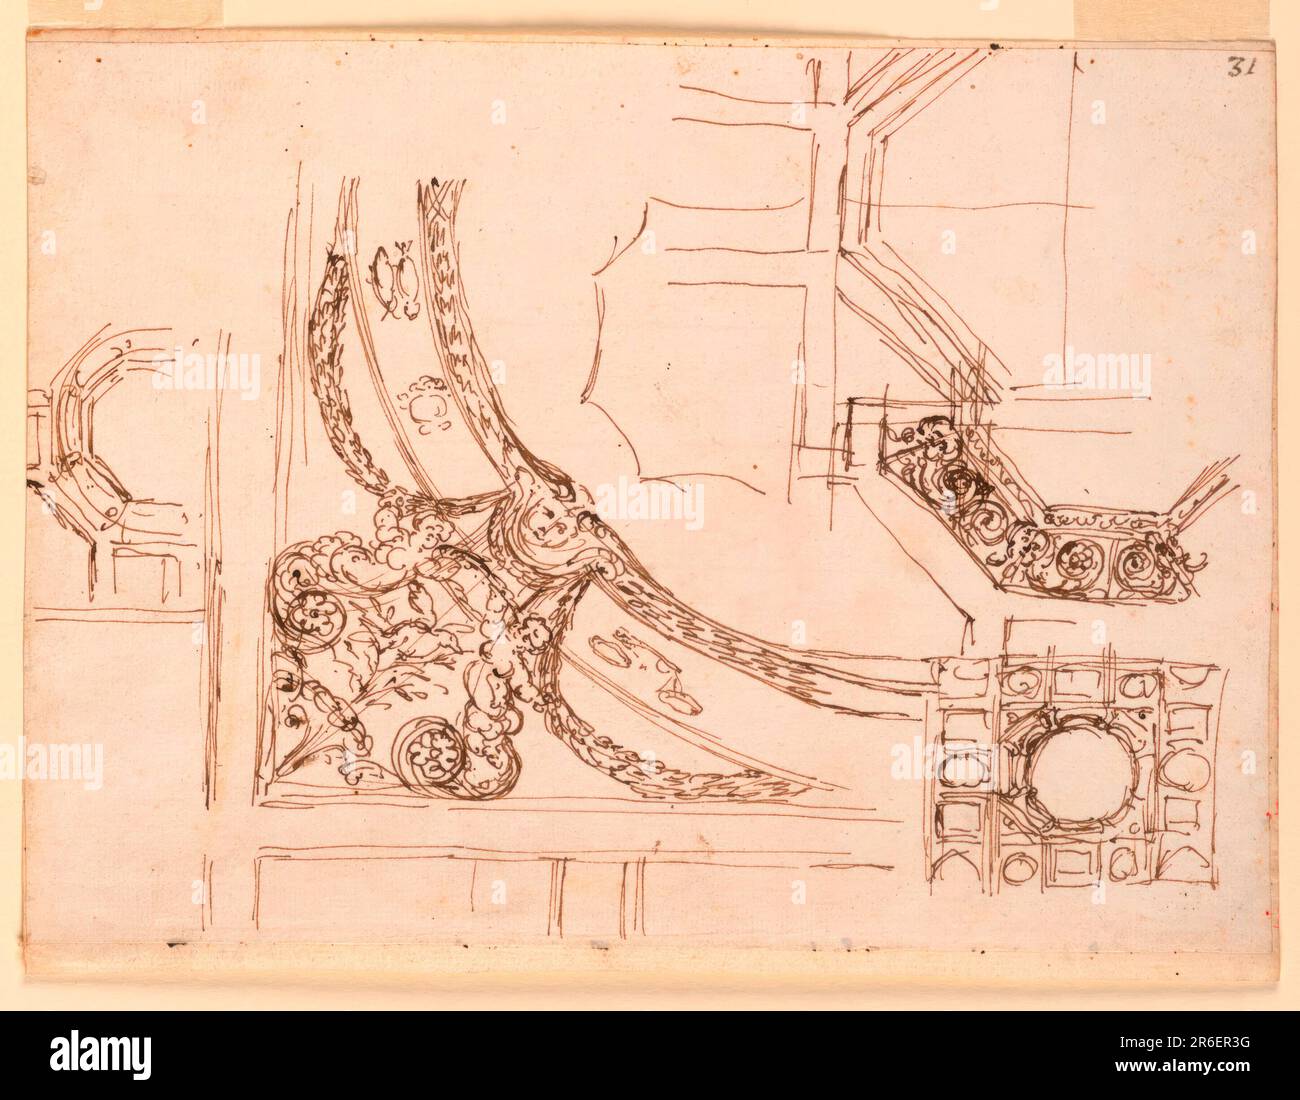 Design per la decorazione del soffitto. Data: 1746-1809. Penna e inchiostro marrone, inchiostro rosso su carta quasi bianca, con righe. Museo: Cooper Hewitt, Smithsonian Design Museum. Foto Stock